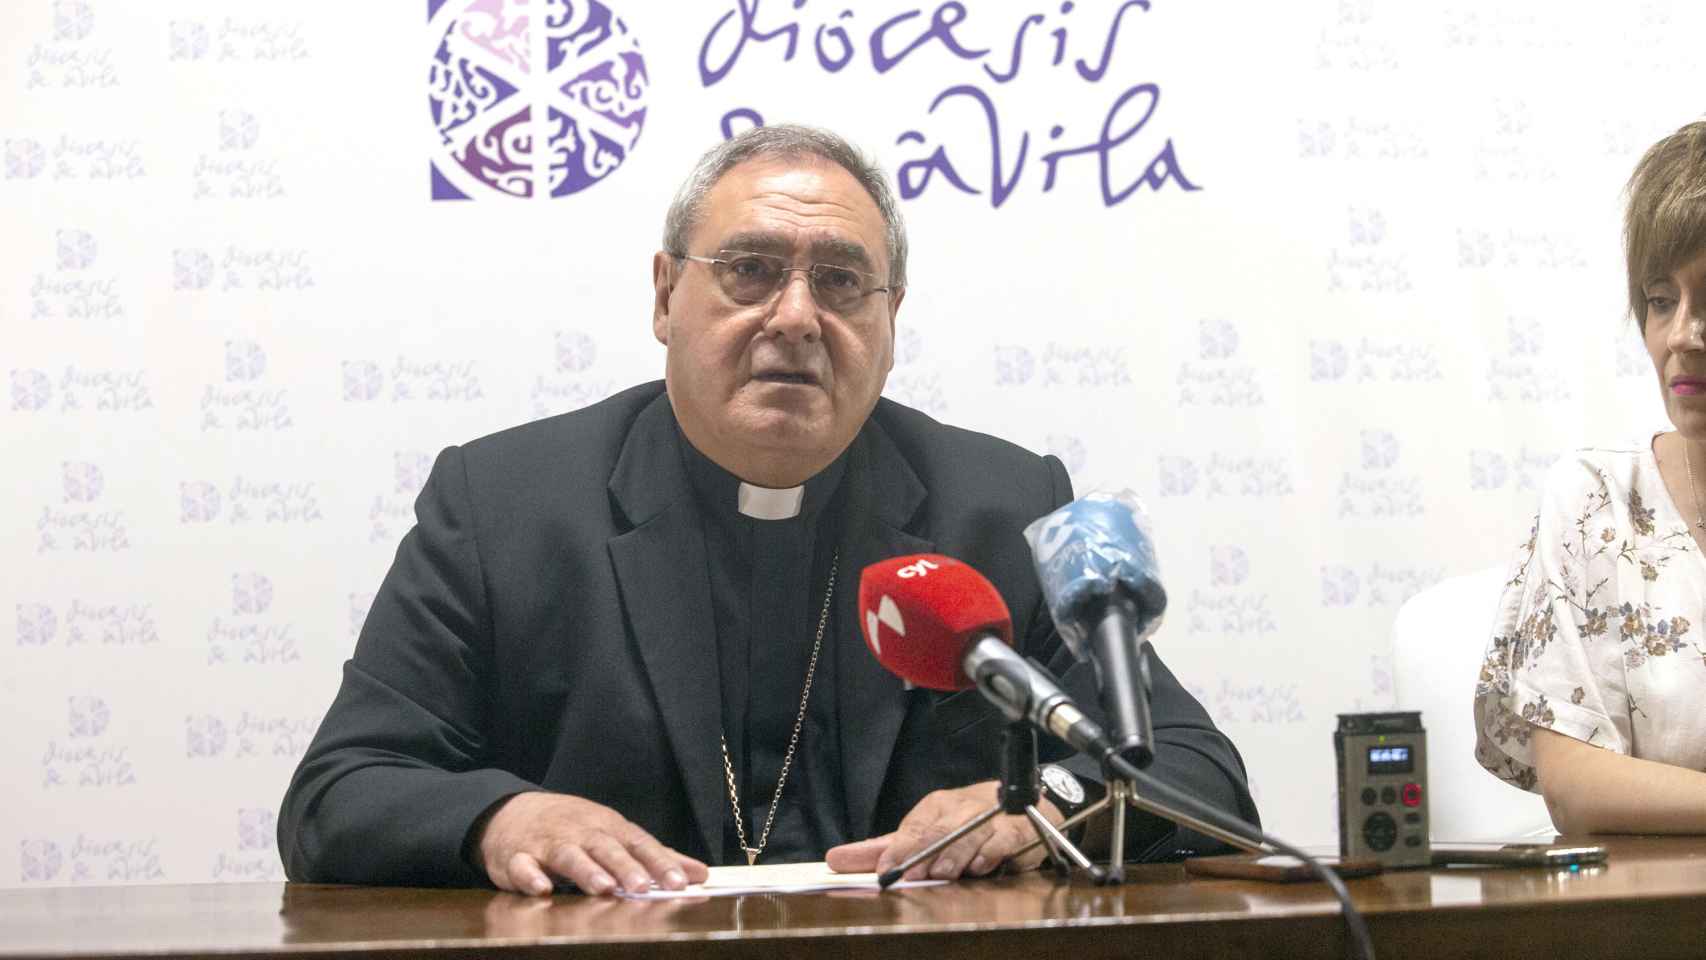 El actual obispo de Ávila, Gil Tamayo anuncia su nuevo nombramiento como como arzobispo coadjutor de Granada